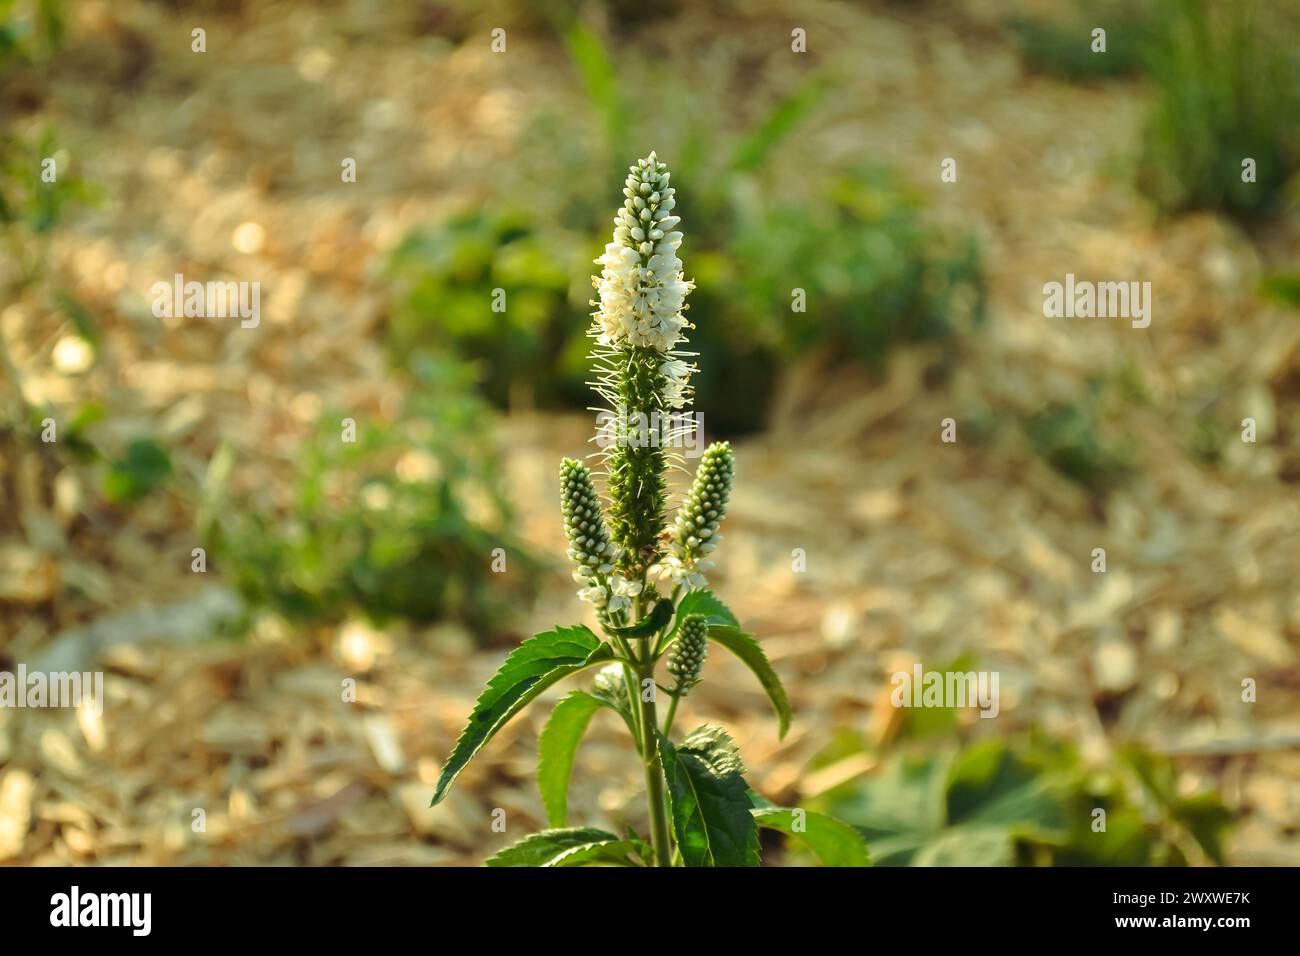 Veronica longifolia pianta con fiori bianchi e foglie verdi primo piano sullo sfondo di macchie di erba verde in bokeh Foto Stock